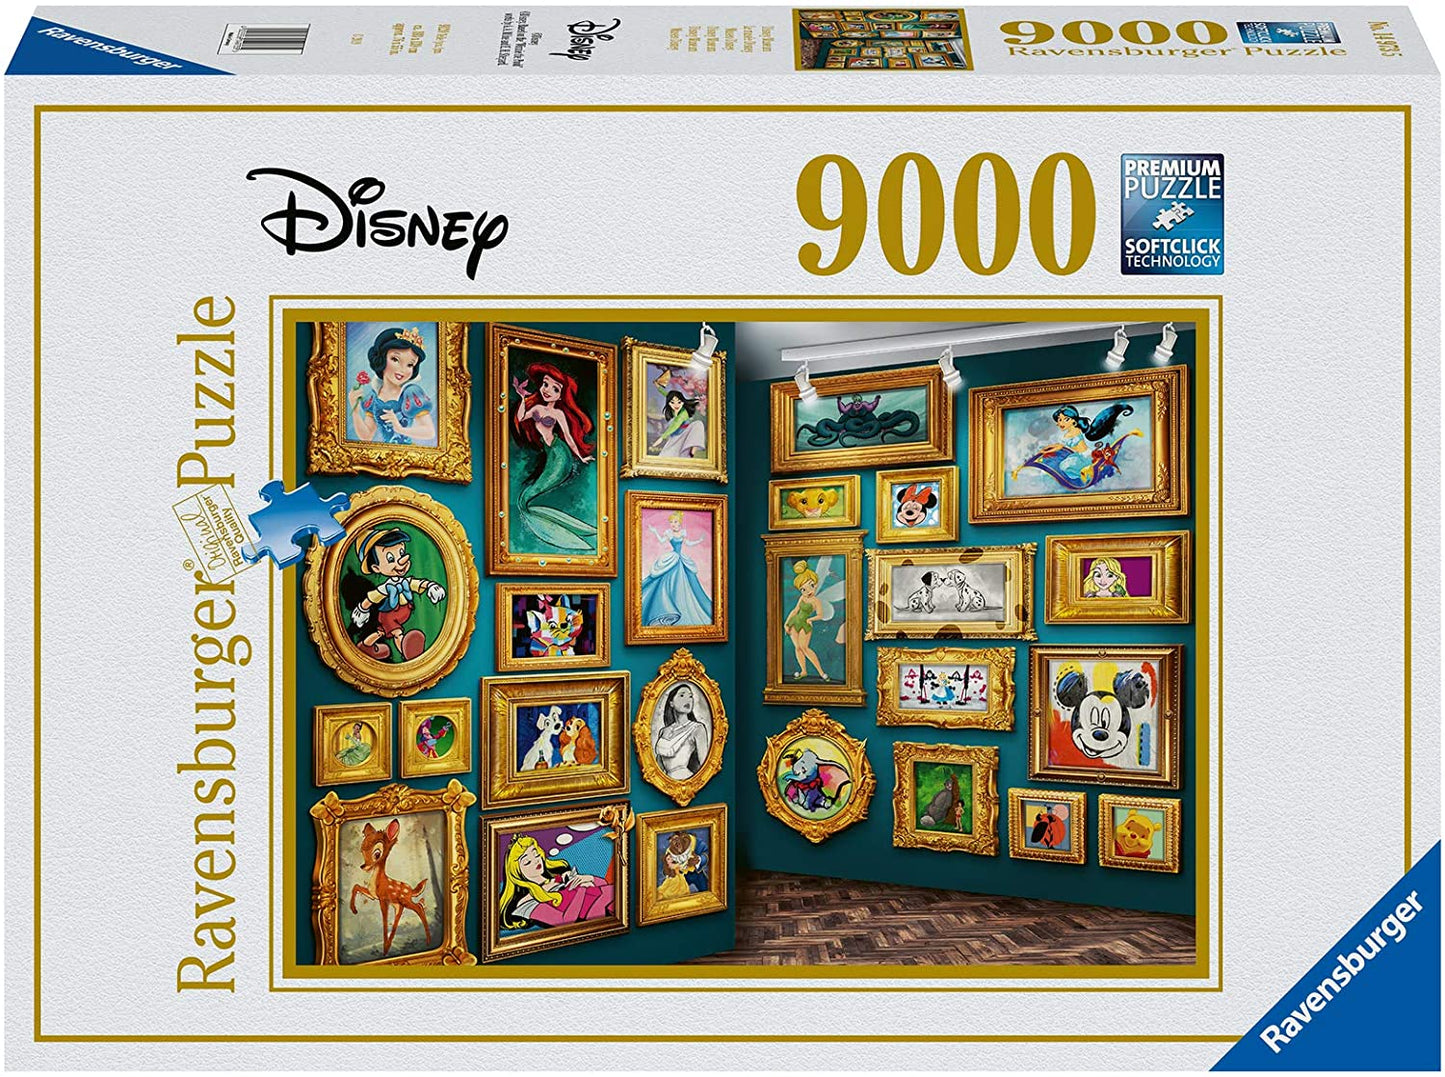 Disney Museum af Disney, 9000 brikker puslespil